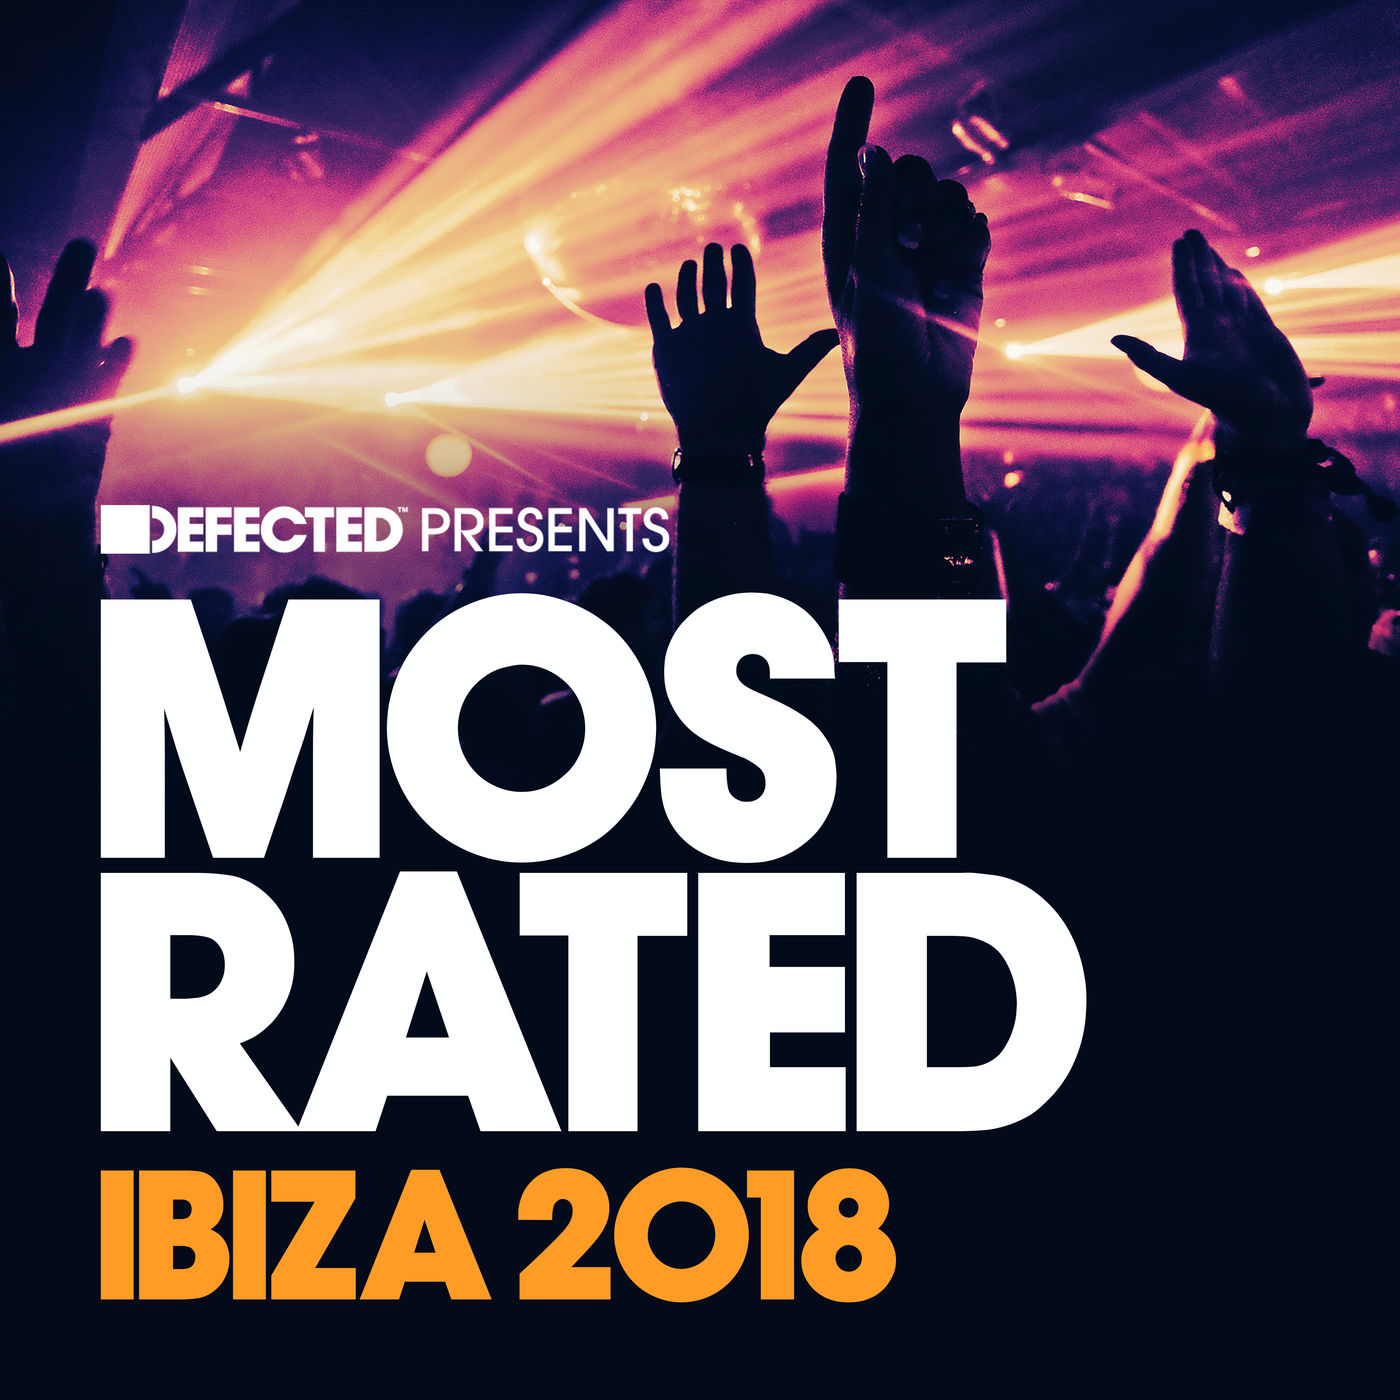 VA - Defected Presents Most Rated Ibiza 2018 / Defected Records